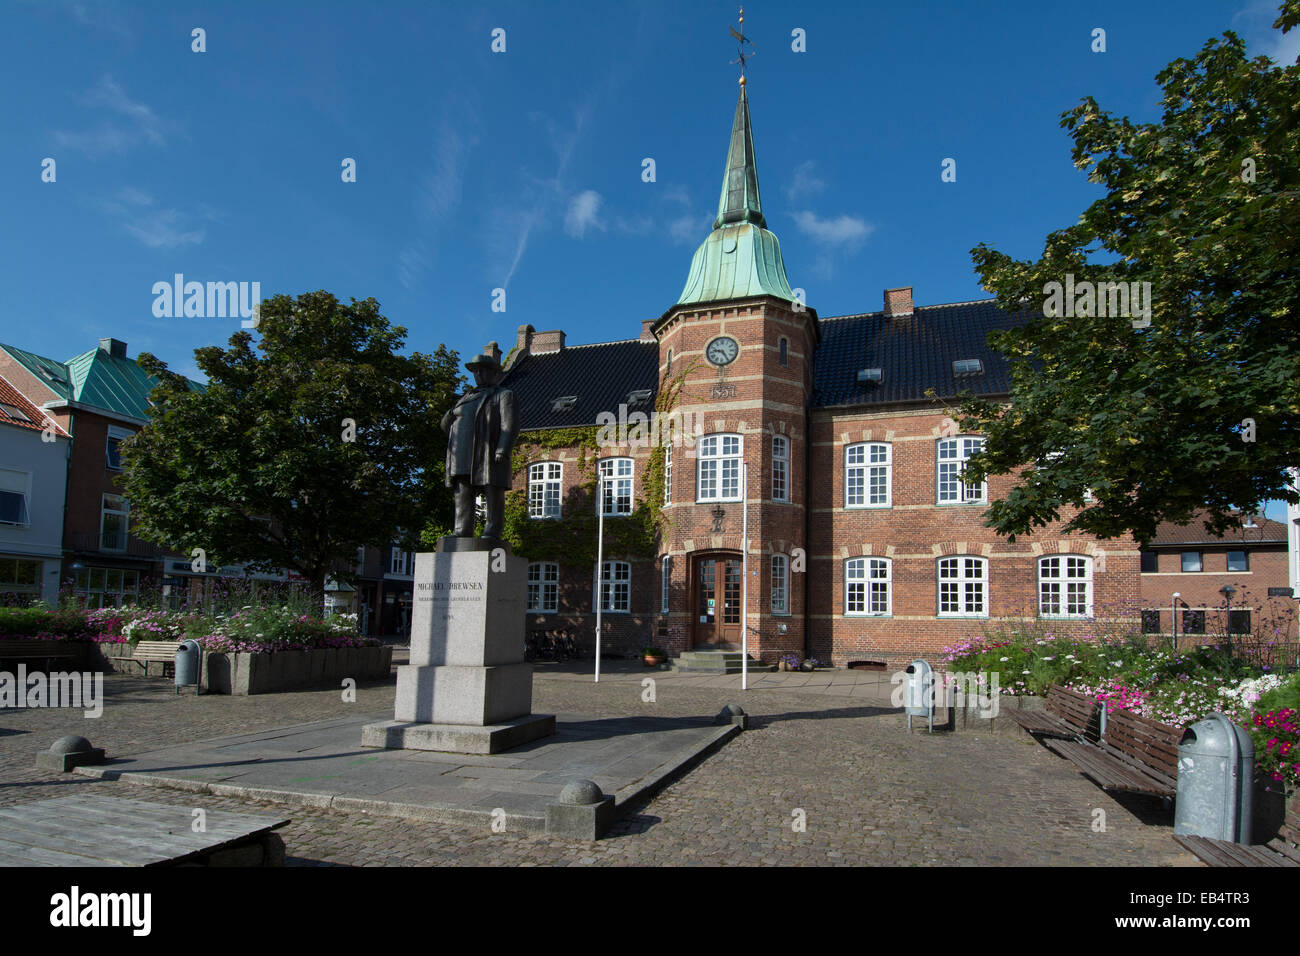 Silkeborg danimarca immagini e fotografie stock ad alta risoluzione - Alamy